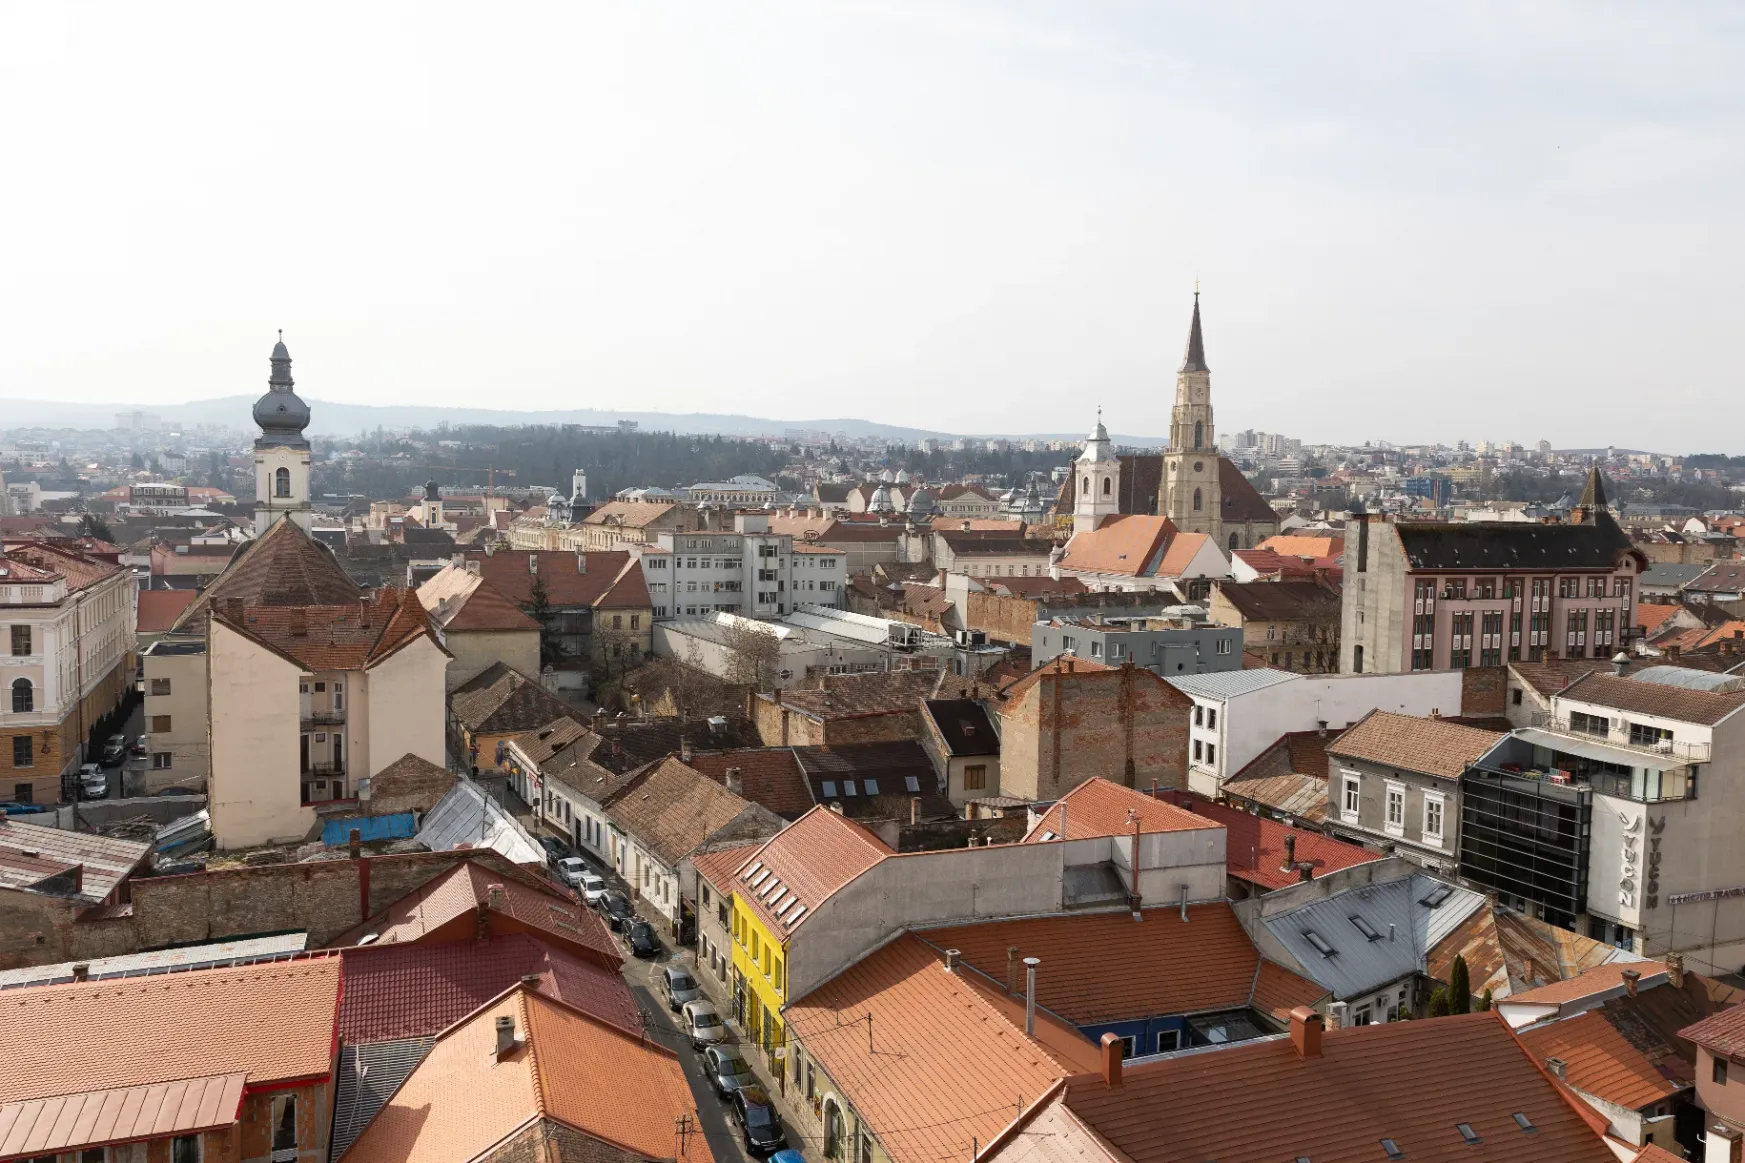 Ingyenes kilátóból csodálhatjuk Kolozsvár belvárosát: megnyílt a Tűzoltótorony